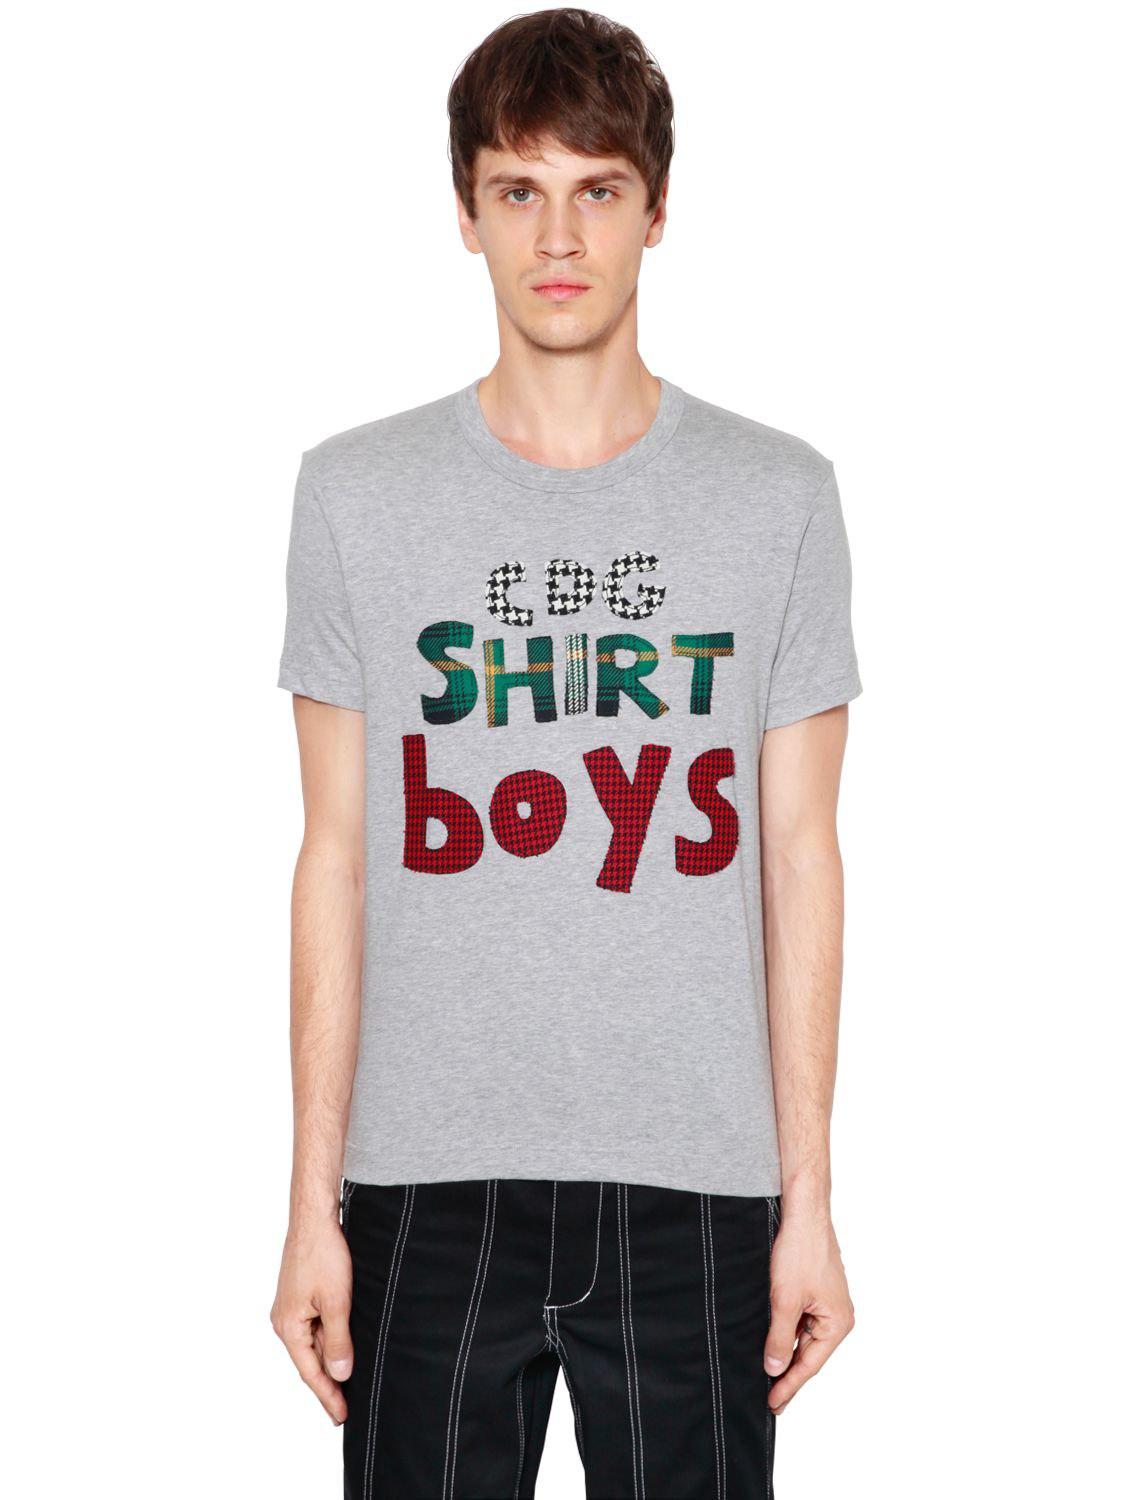 Cdg Shirt Boy Shop, 59% OFF | www.ingeniovirtual.com